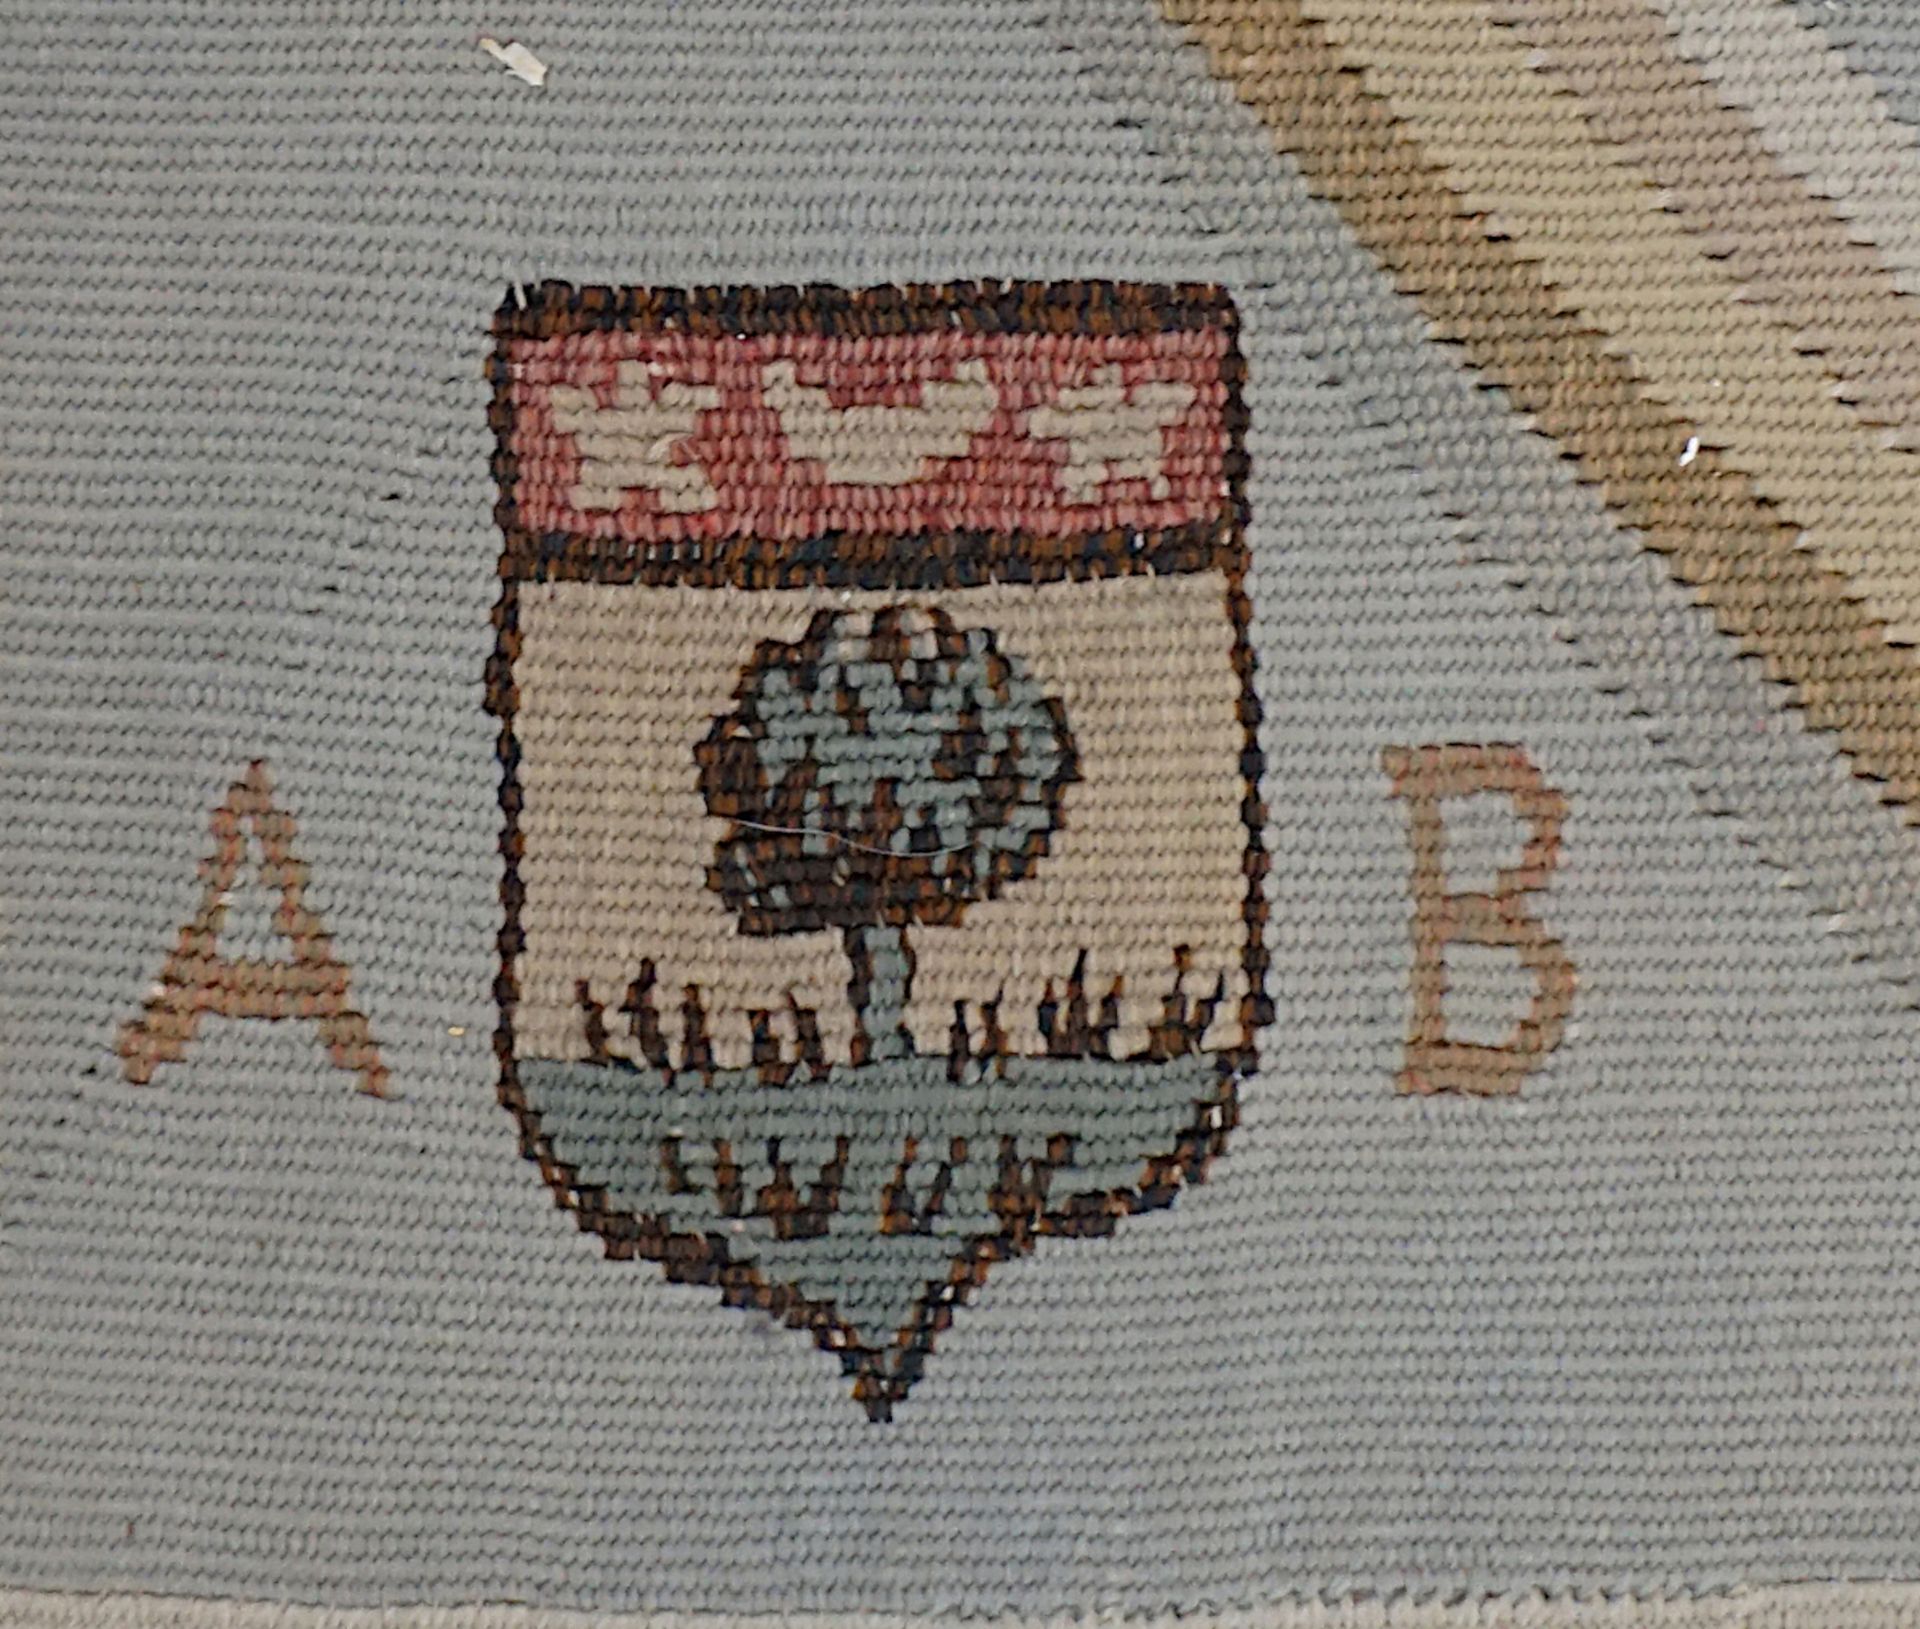 1 Teppich GOBELIN 18./19. Jh. sig. "Aubusson" mit Wappen, grau-blaugrundig mit Stuckmuster, Abrieb - Bild 6 aus 6